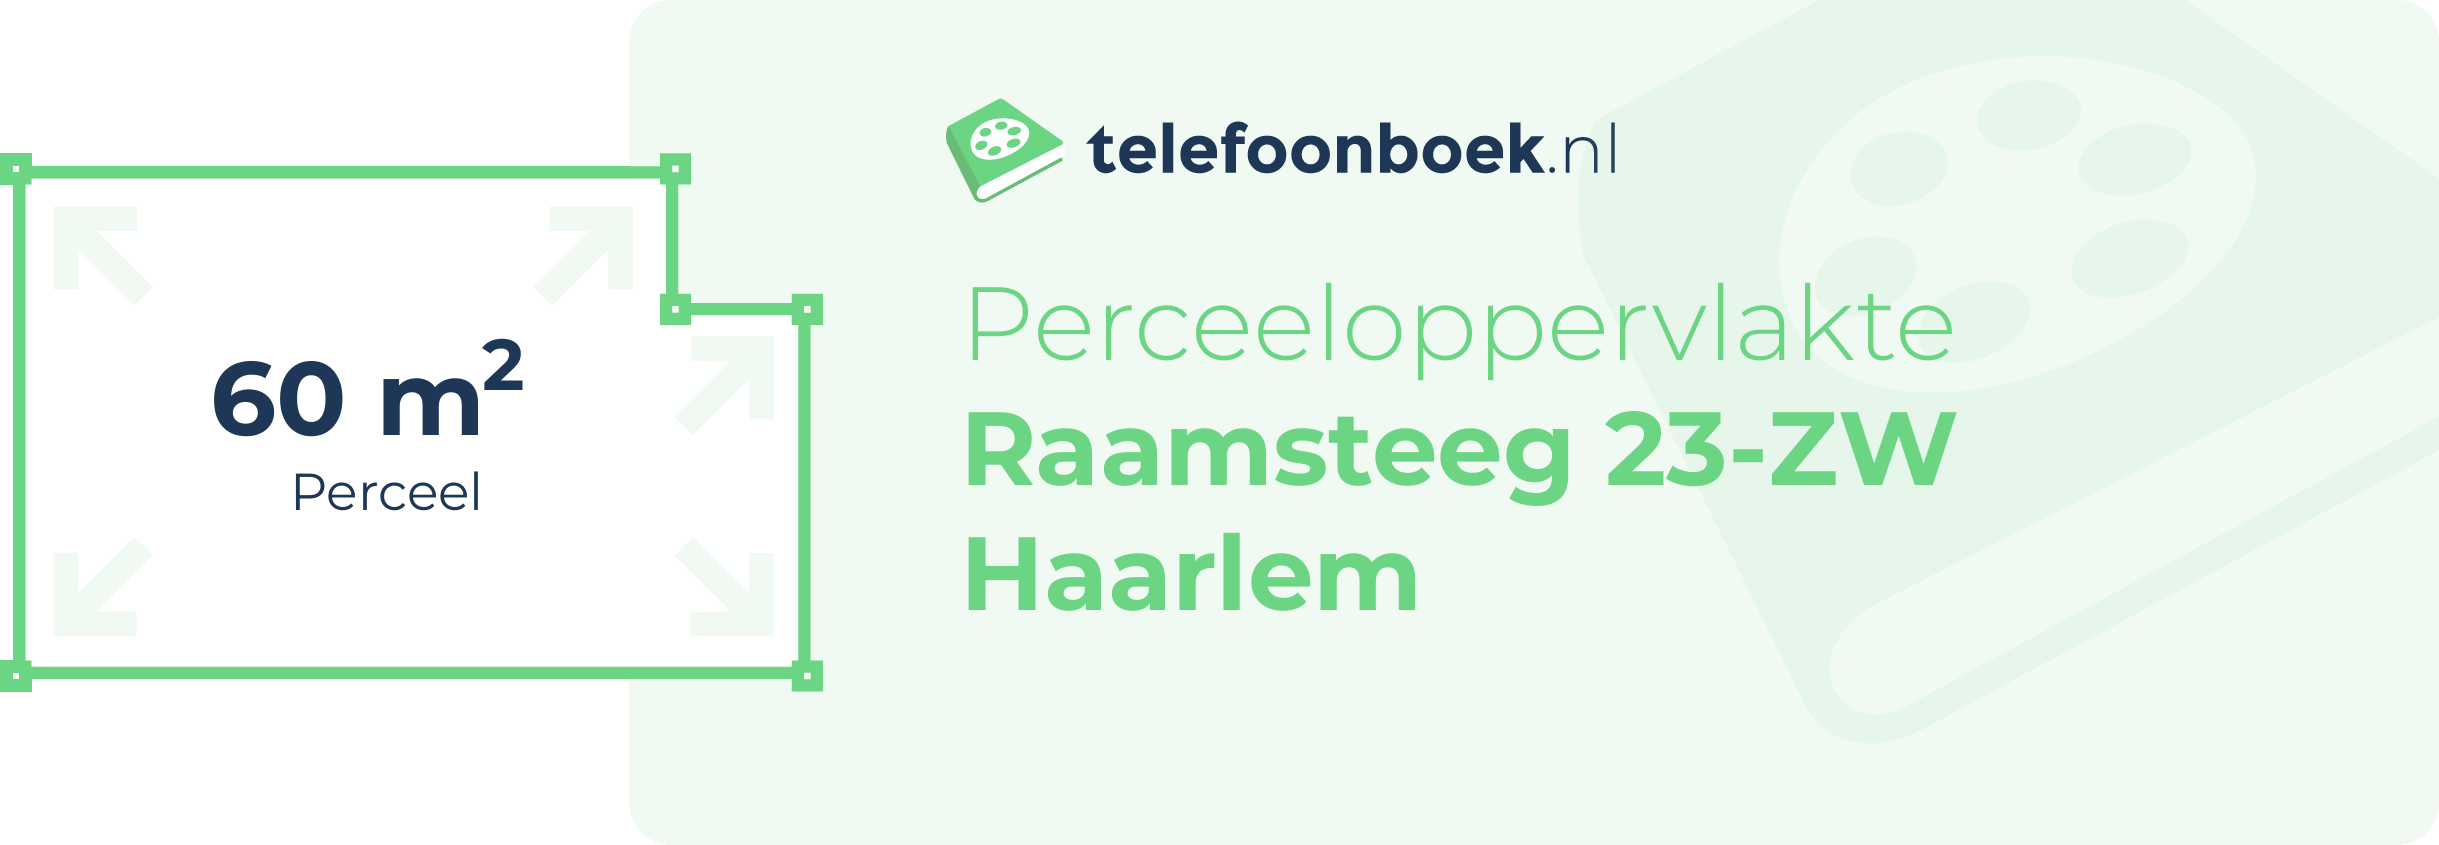 Perceeloppervlakte Raamsteeg 23-ZW Haarlem